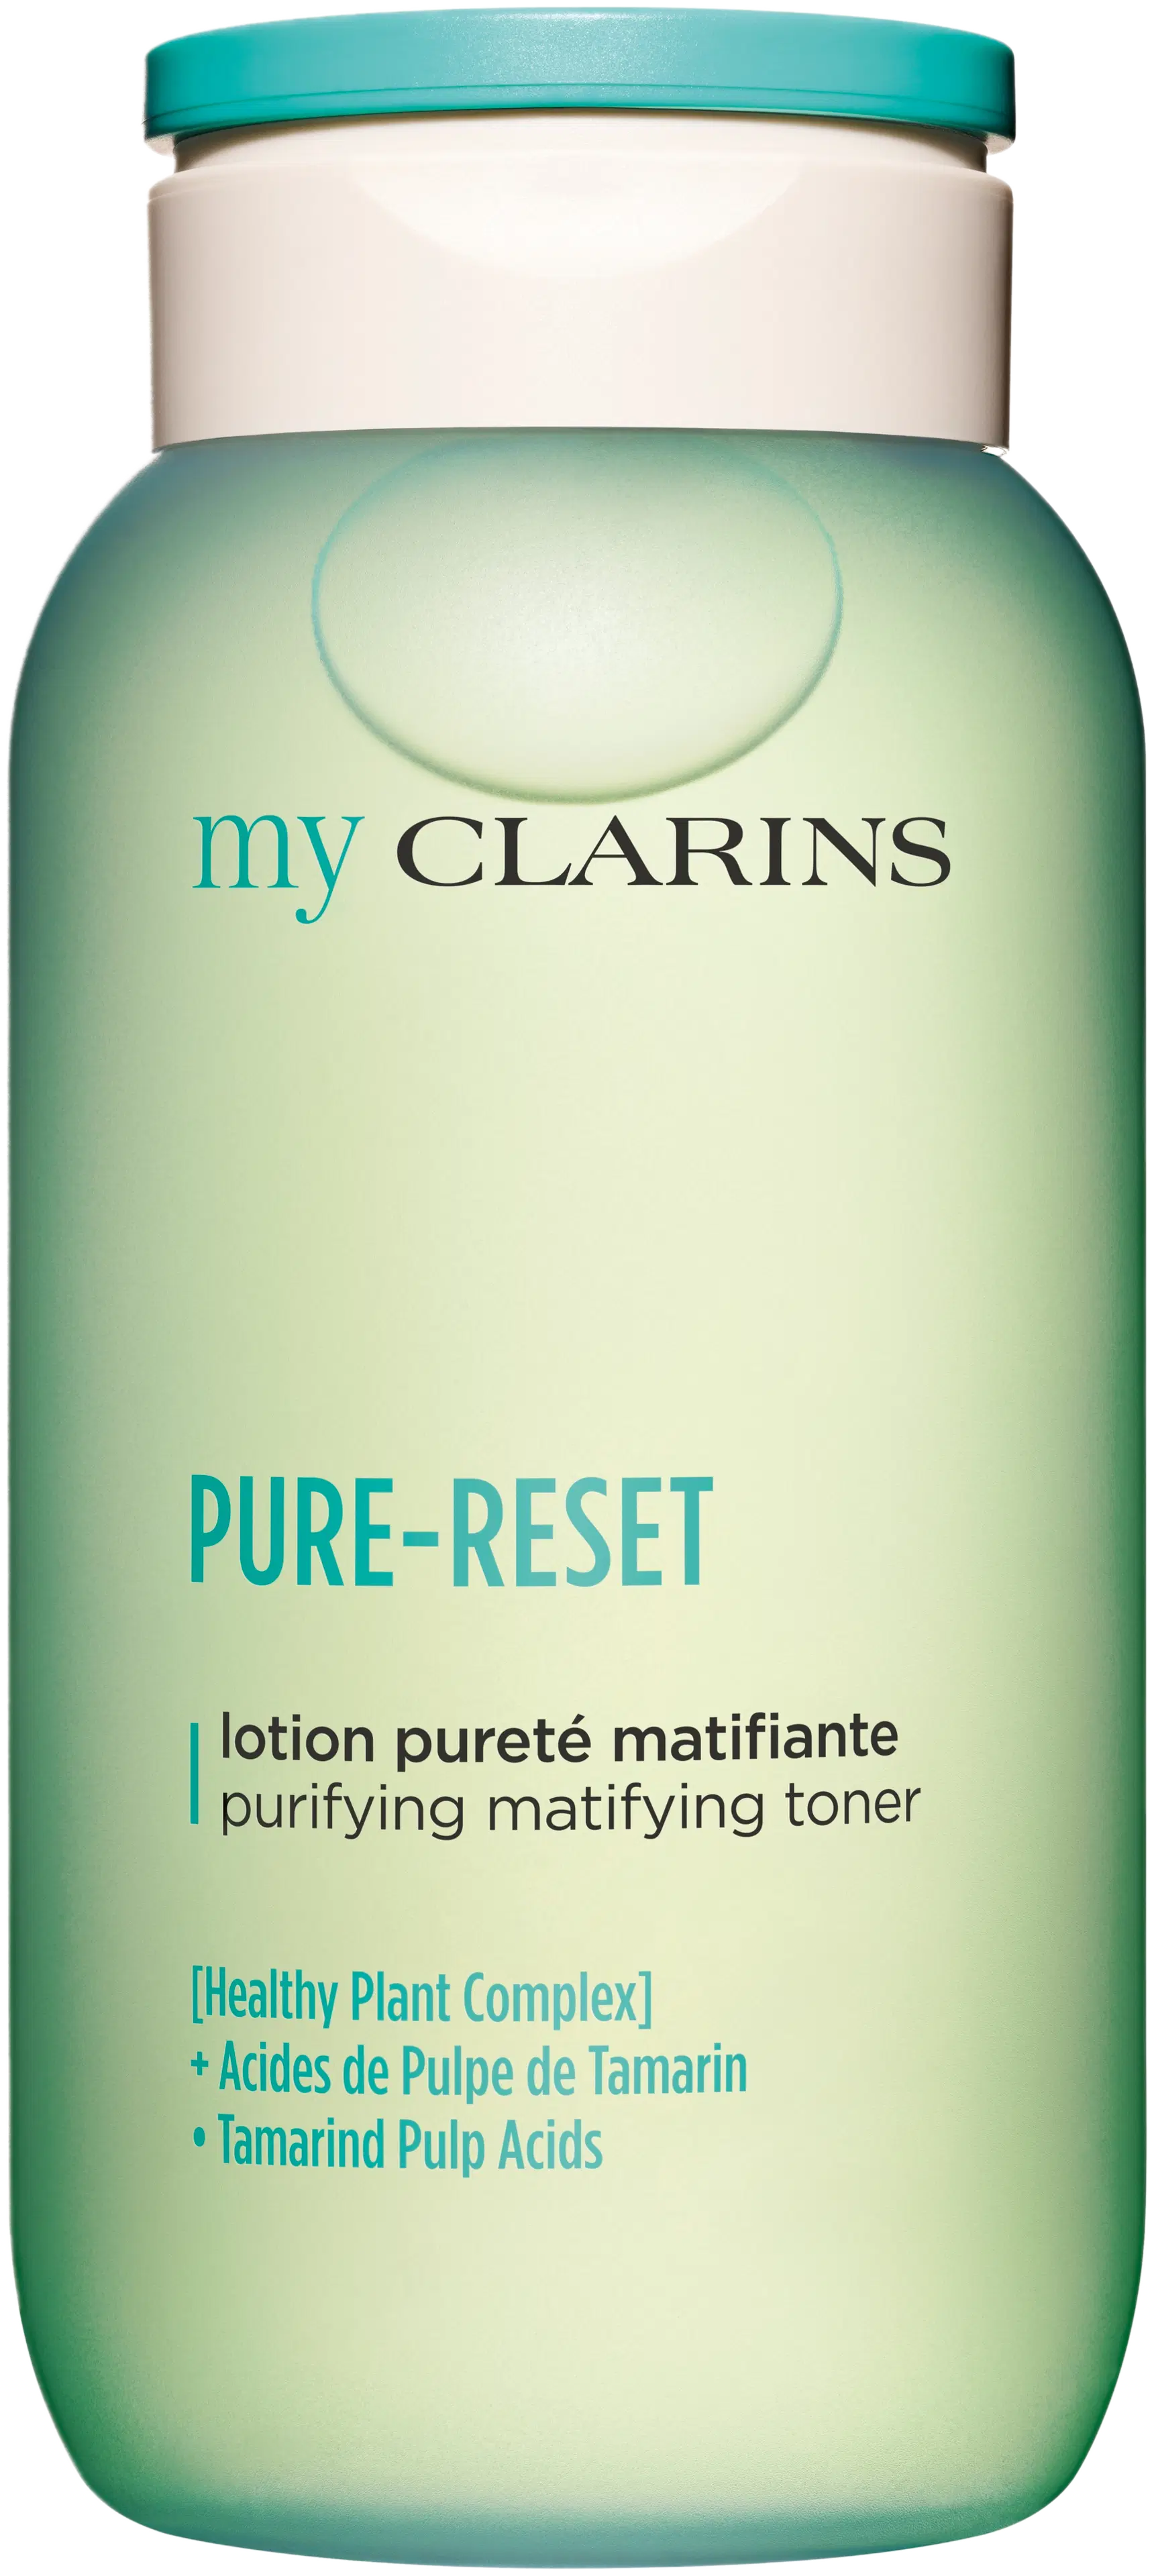 Clarins My Clarins PURE-RESET purifying matifying toner kasvovesi 200 ml 